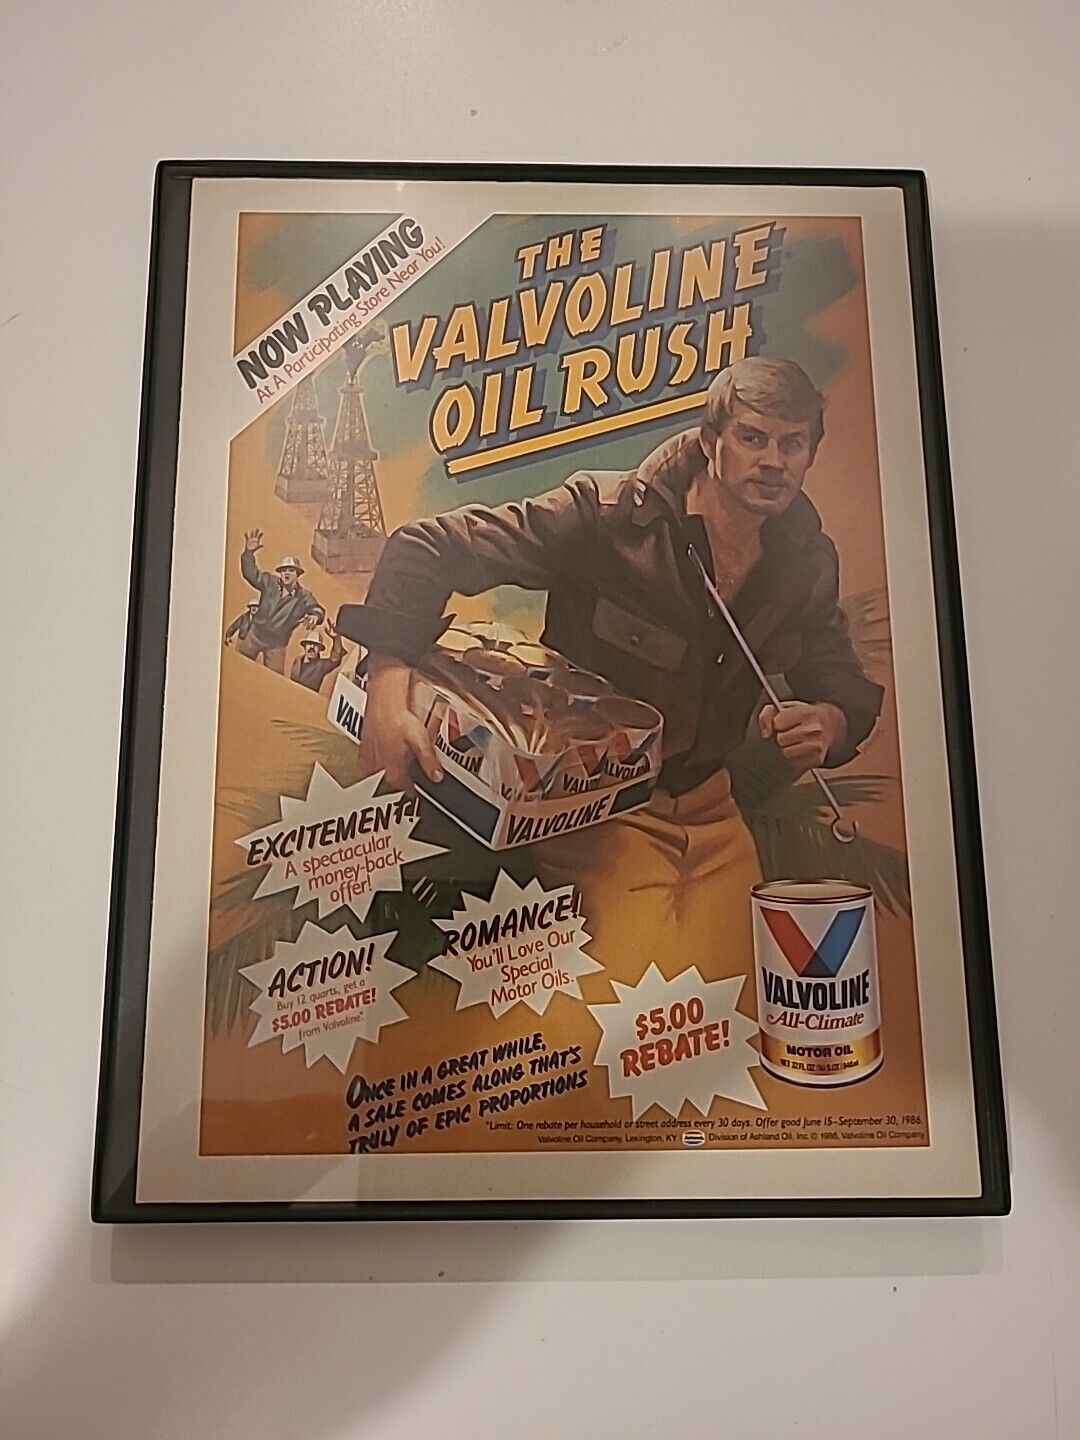 Valvoline Motor Oil Rush Print Ad 1986 Framed 8.5x11 